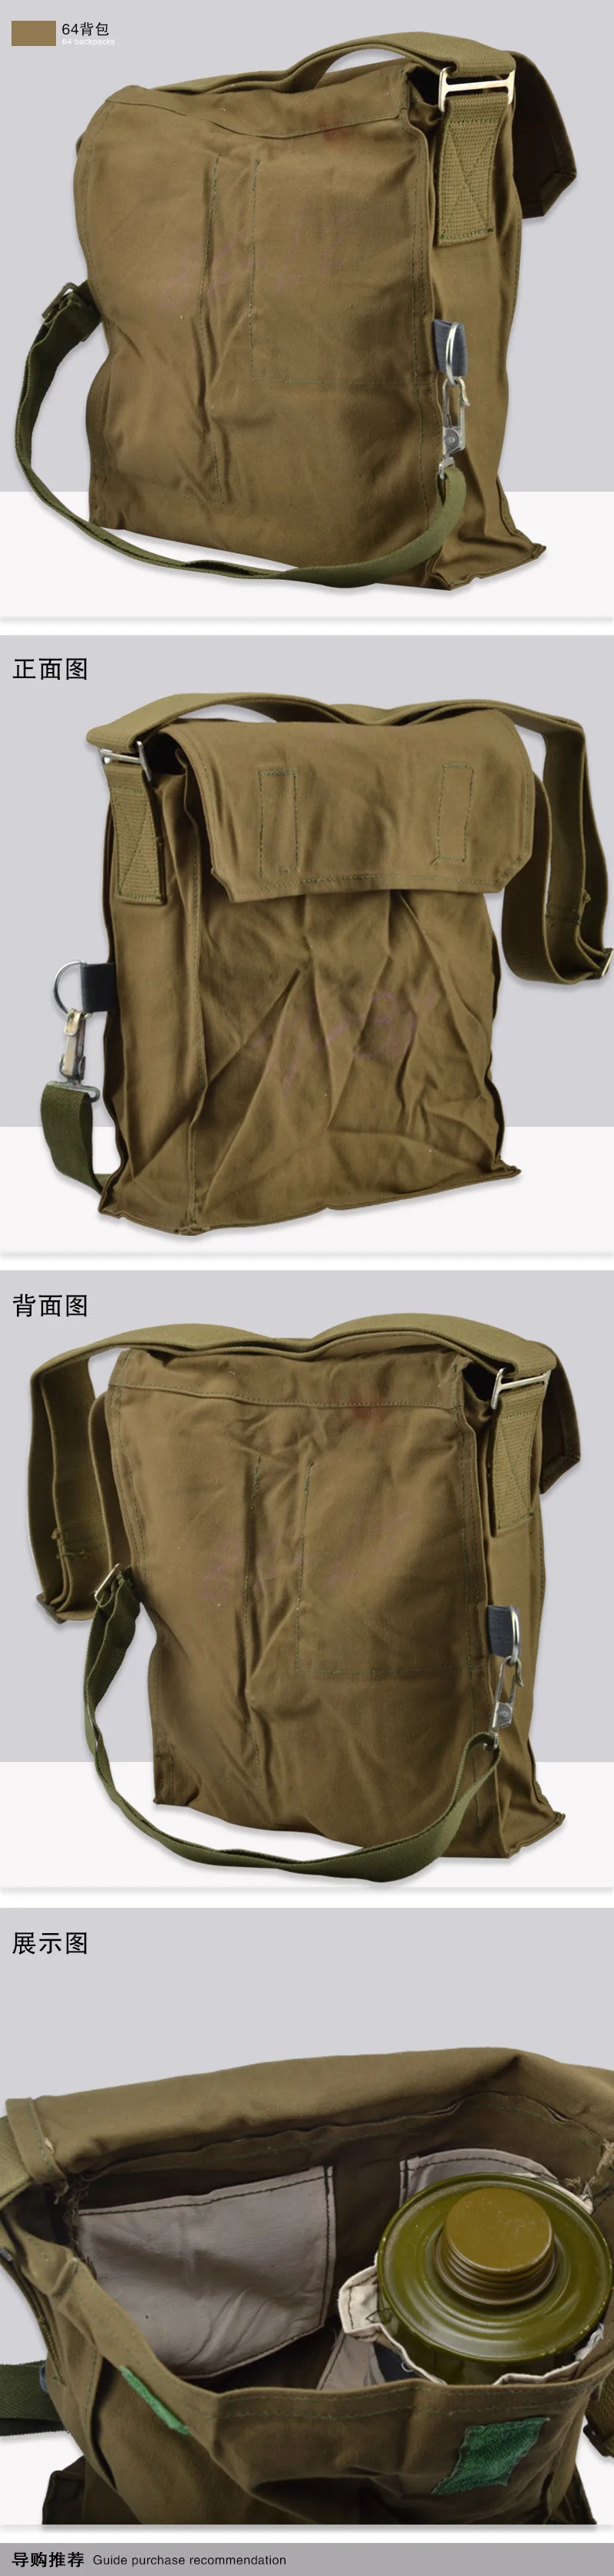 Прямая продажа от производителя, 64 брезентовые сумки, комбинированные MF1, противогаз, полная маска, безопасность труда, оптовая продажа